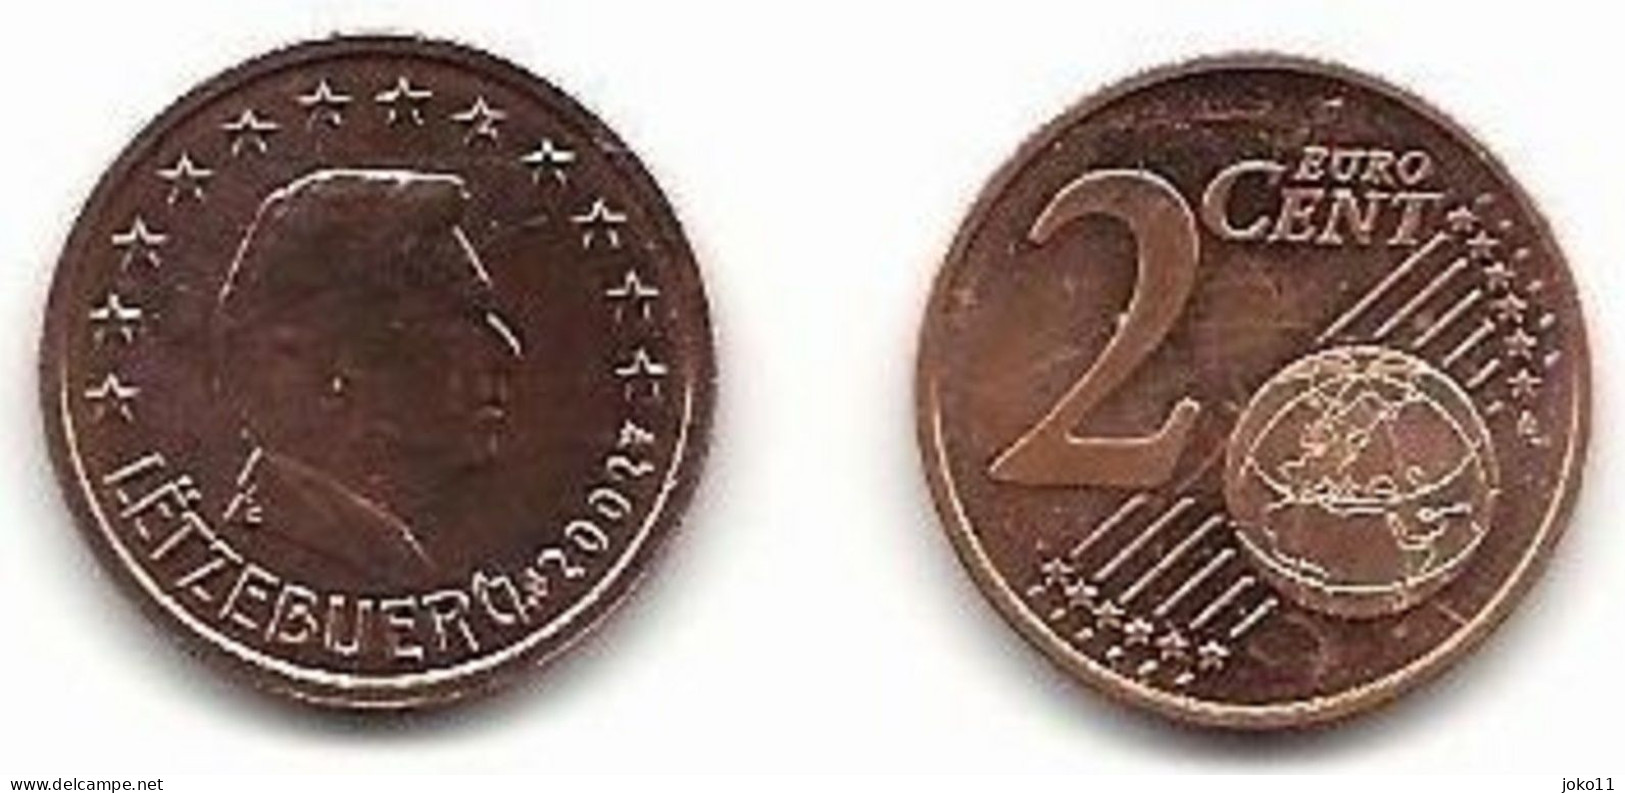 Luxemburg, 2002, 2 Cent, Vz, Gut Erhaltene Umlaufmünze - Luxemburg